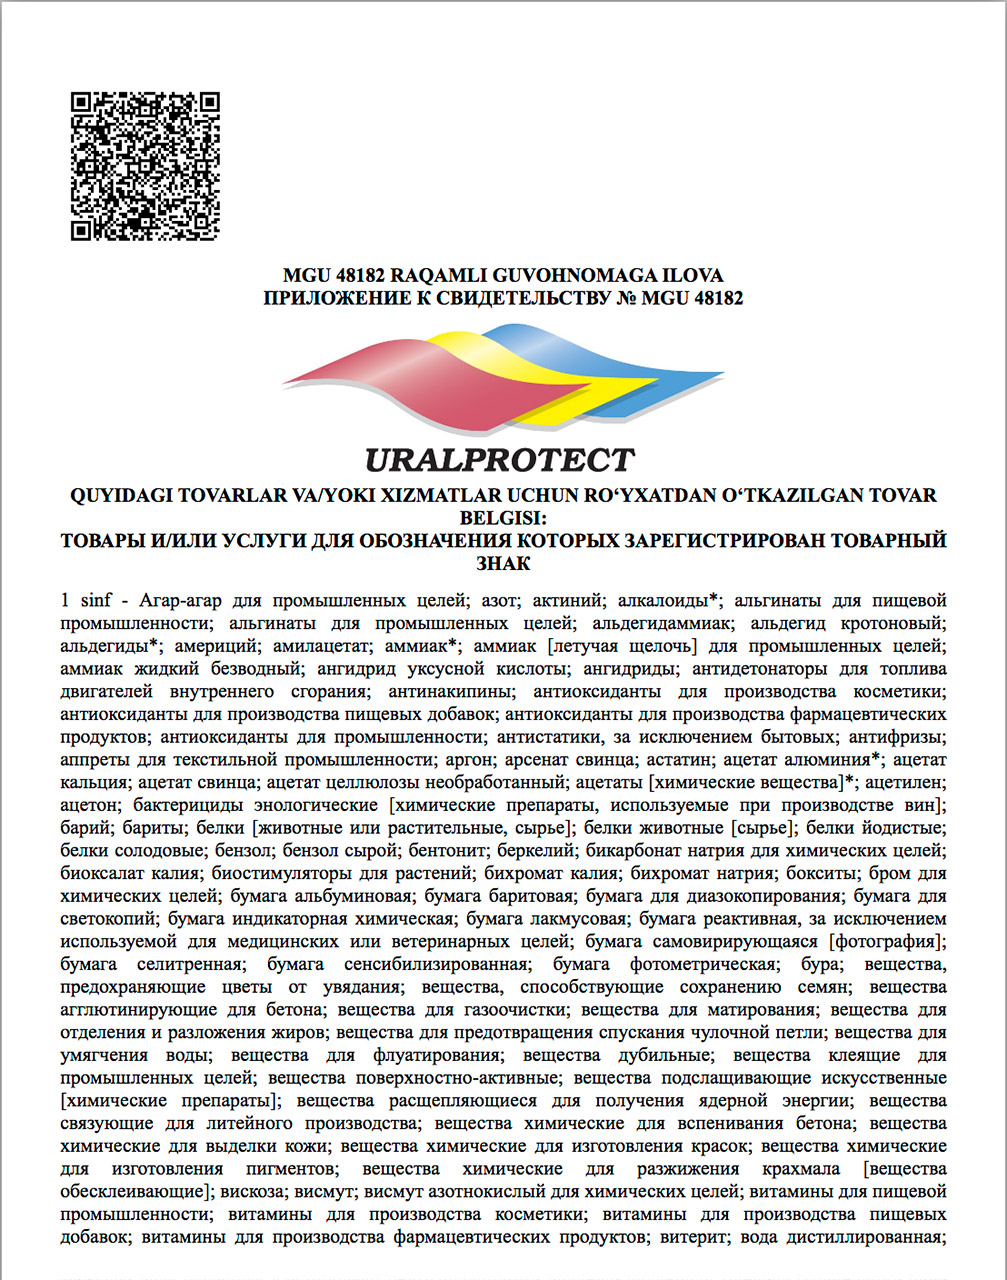 Приложение (фрагмент) к Cертификату товарного знака ООО «Уралпротект», выданный Республикой Узбекистан